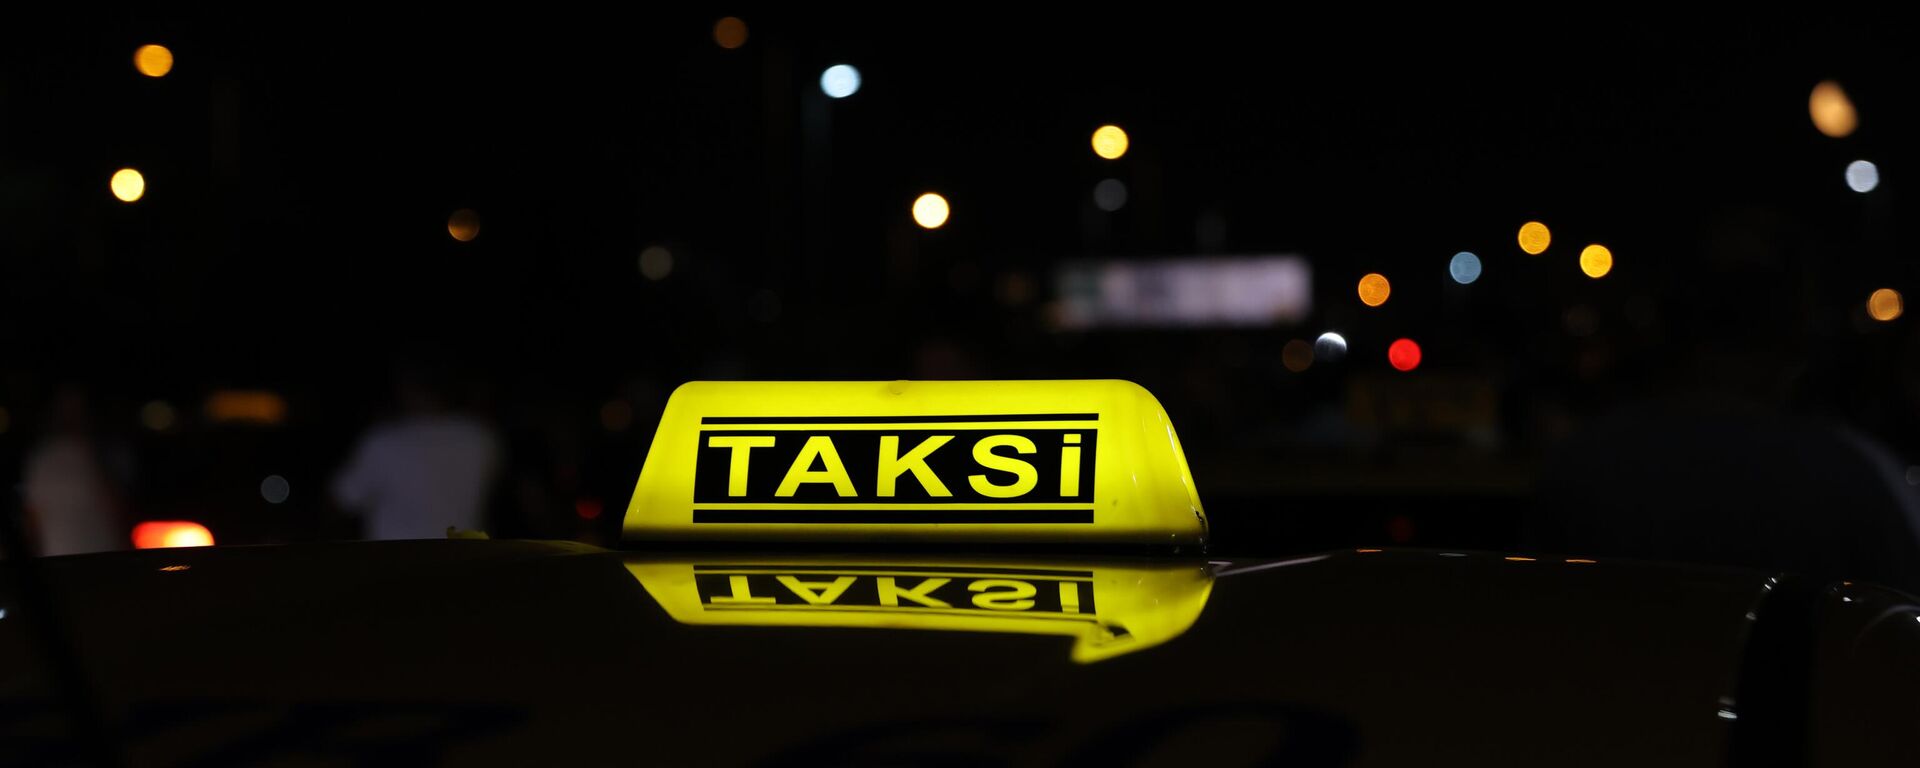  İstanbul'da bir grup taksici konvoy oluşturarak taksimetre ücretlerine yüzde 100 zam yapılmasını talep etti. Avrupa yakasında Fatih'teki Vatan Caddesi'nde, Anadolu yakasında Göztepe Köprüsü'nde toplanarak konvoy halinde Yenikapı Sahili'ne hareket eden çok sayıda taksici taksimetre ücretlerine zam talebinde bulundu. - Sputnik Türkiye, 1920, 02.09.2023